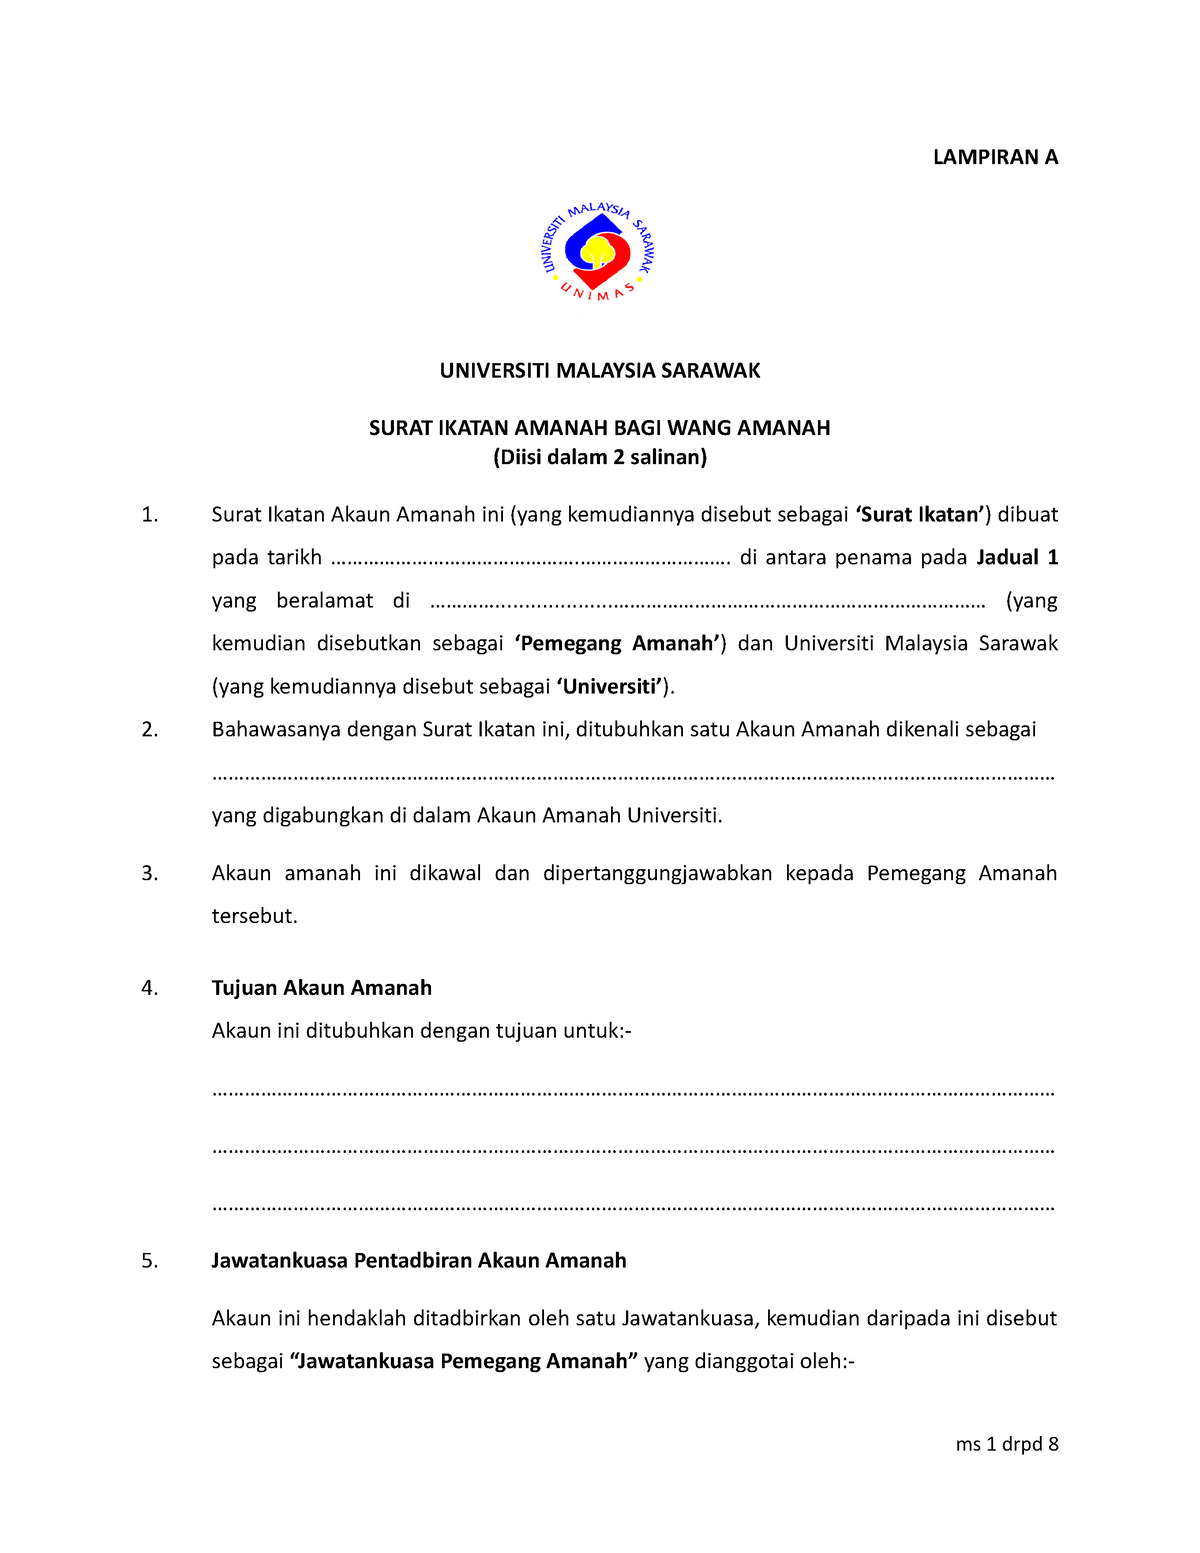 Surat Ikatan Amanah 2 Lampiran A Universiti Malaysia Sarawak Surat Ikatan Amanah Bagi Wang 